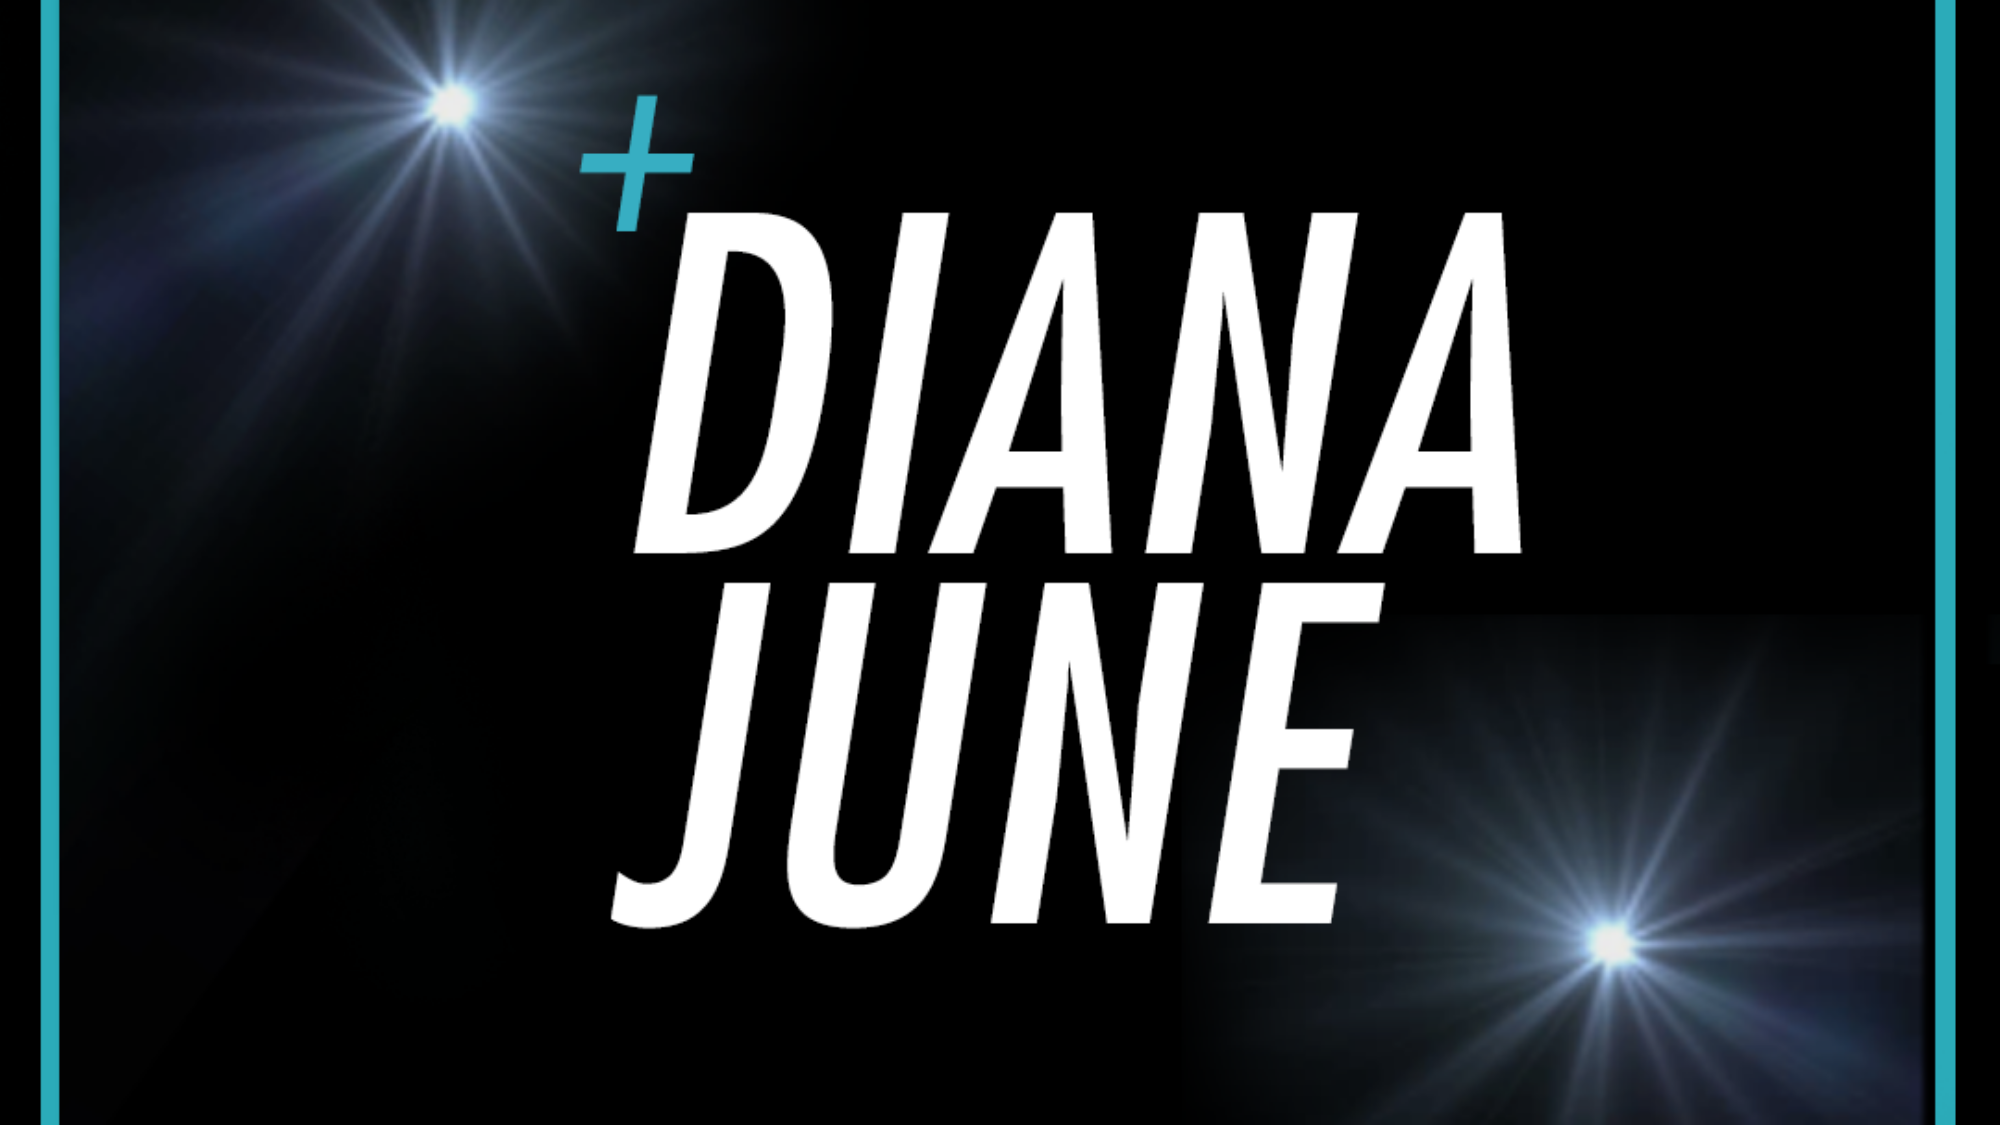 Diana-June